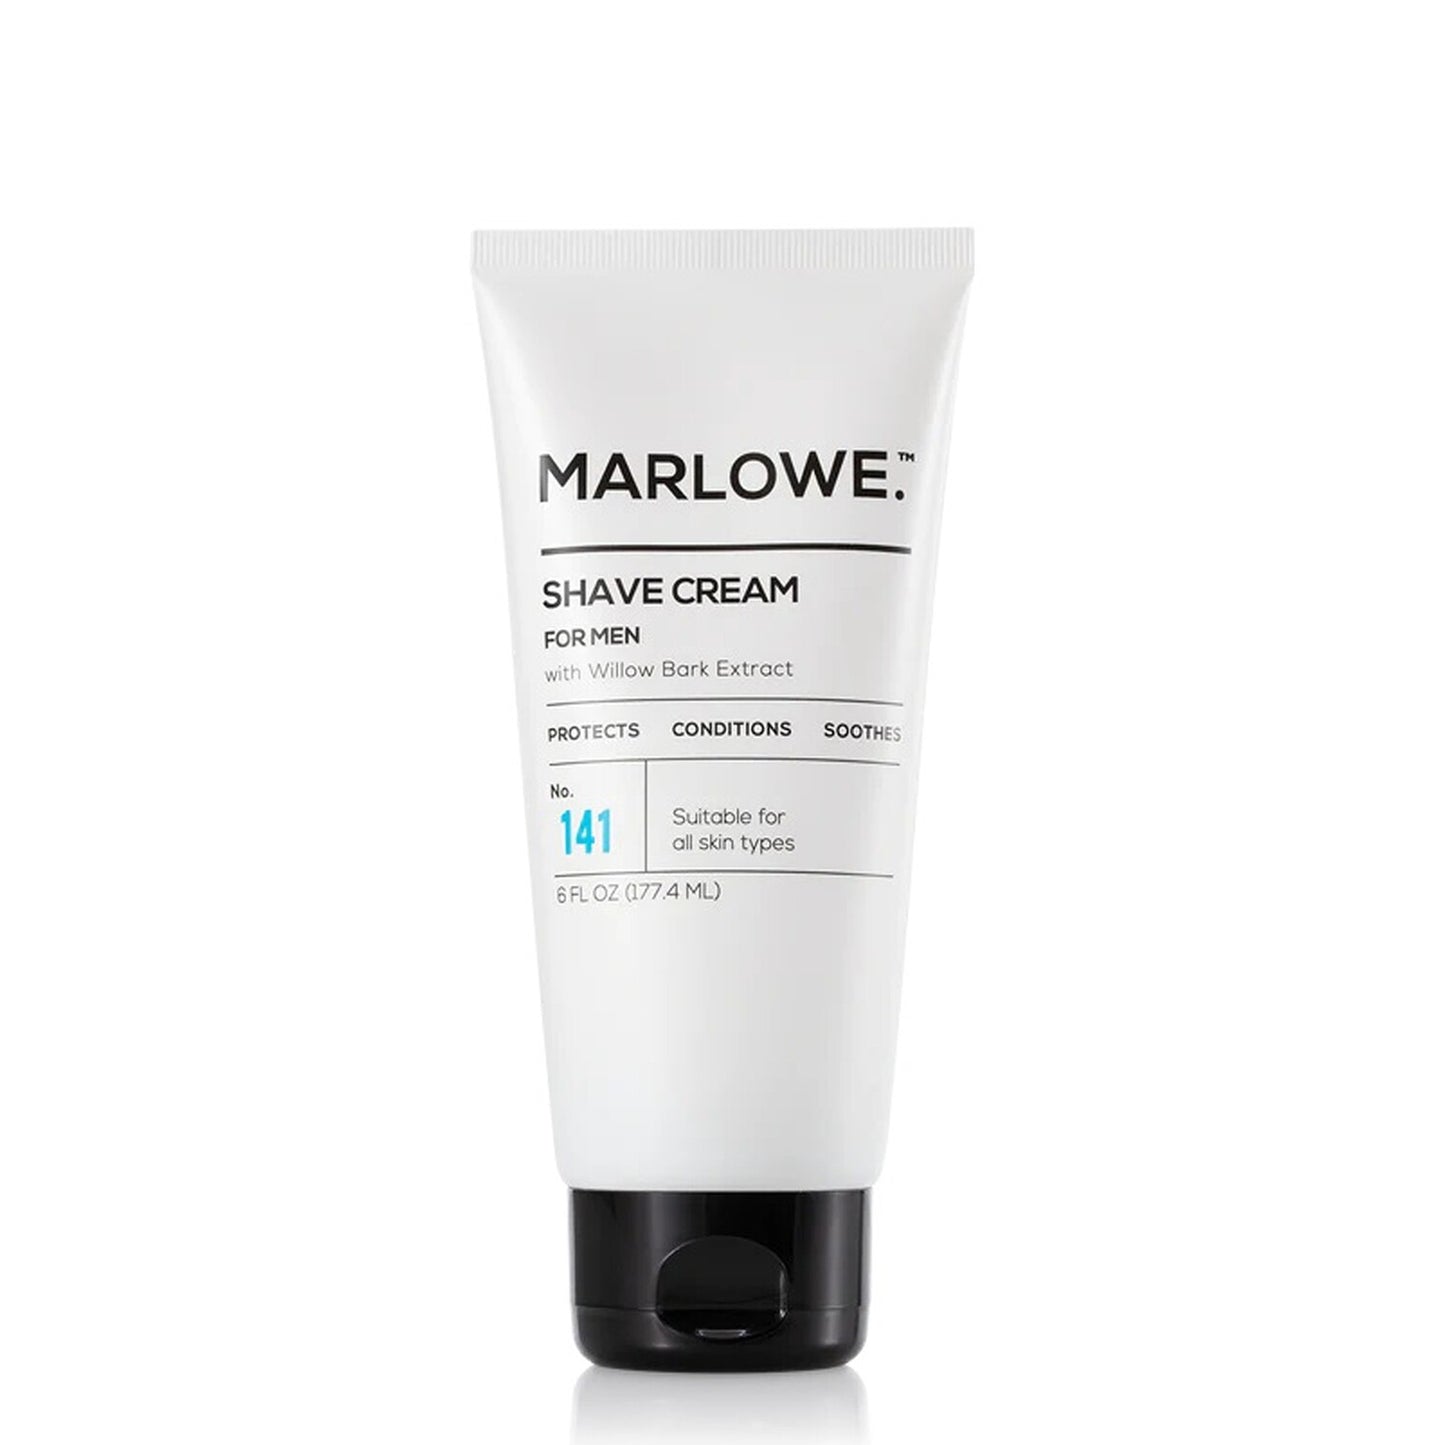 Marlowe's No. 141 Shaving Cream